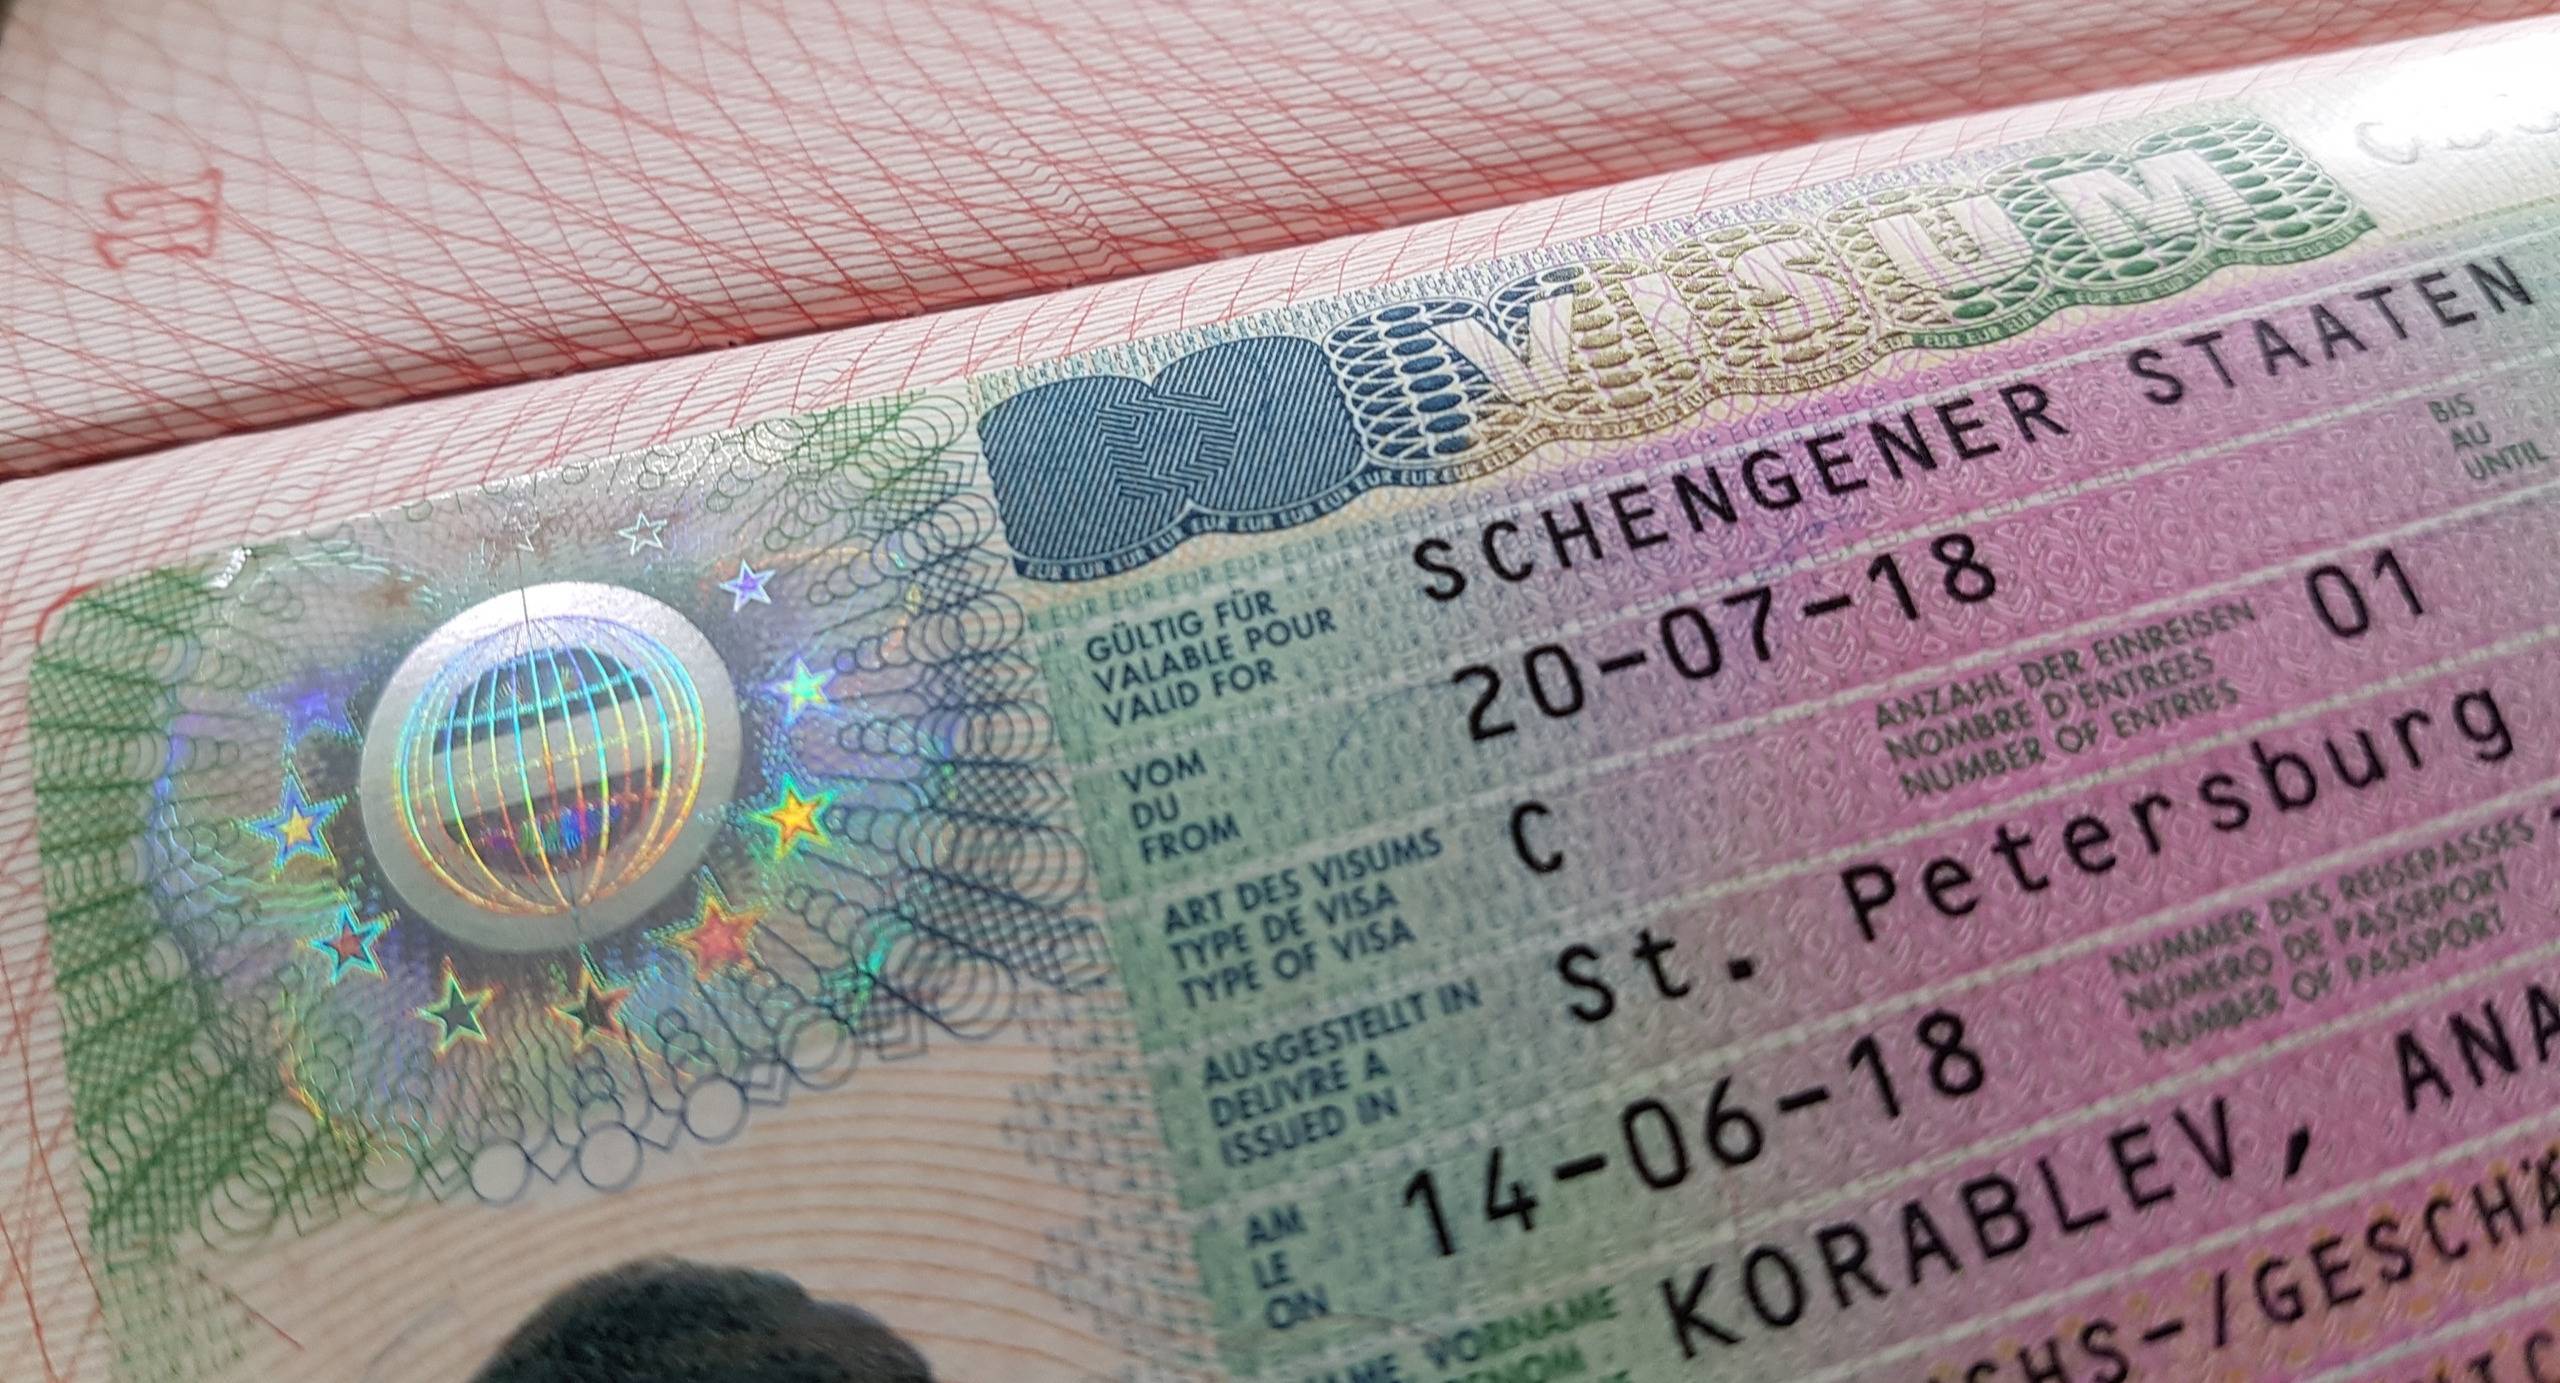 Виза в лихтенштейн: необходимые документы, поездка для студентов
виза в лихтенштейн: необходимые документы, поездка для студентов